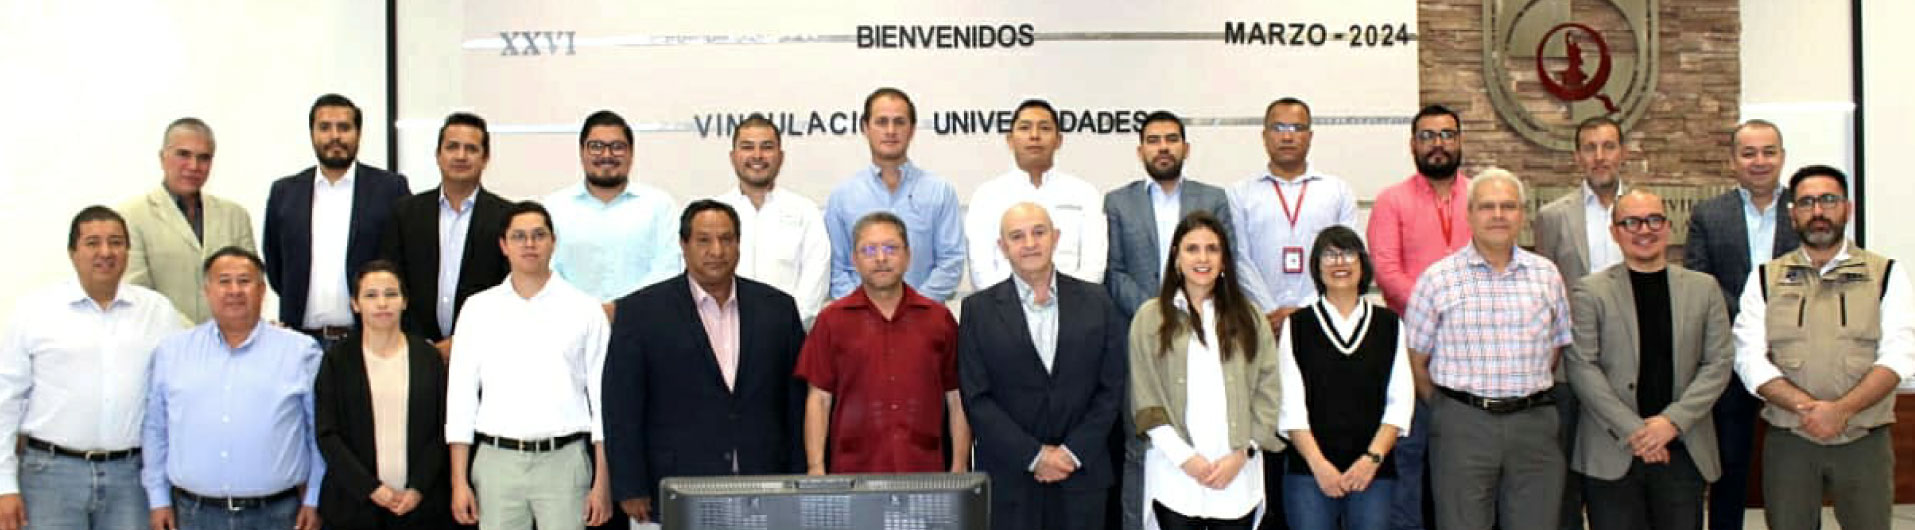 Maccaferri y el Colegio de Ingenieros Civiles de Querétaro promueven la innovación con el 1er Concurso de Diseño de Maquetas Hidráulicas. 